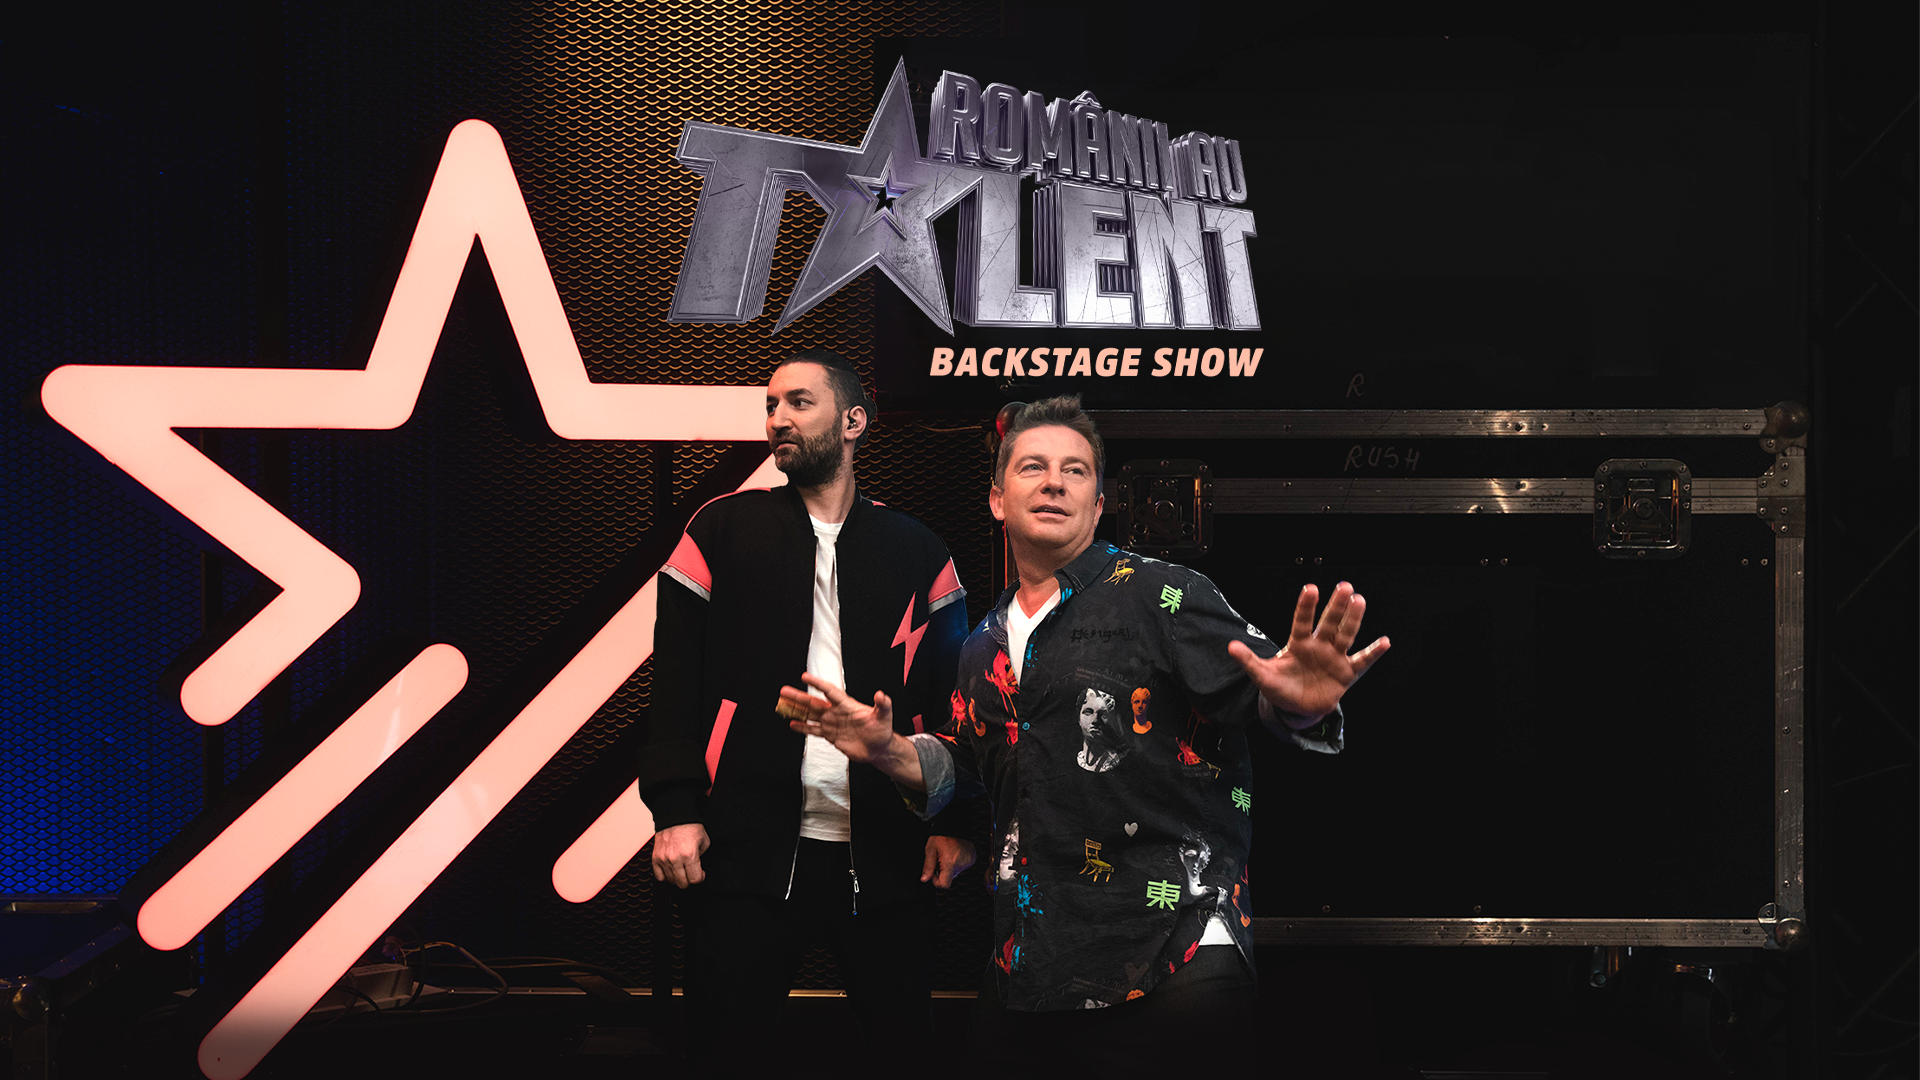 Românii au talent: Backstage Show